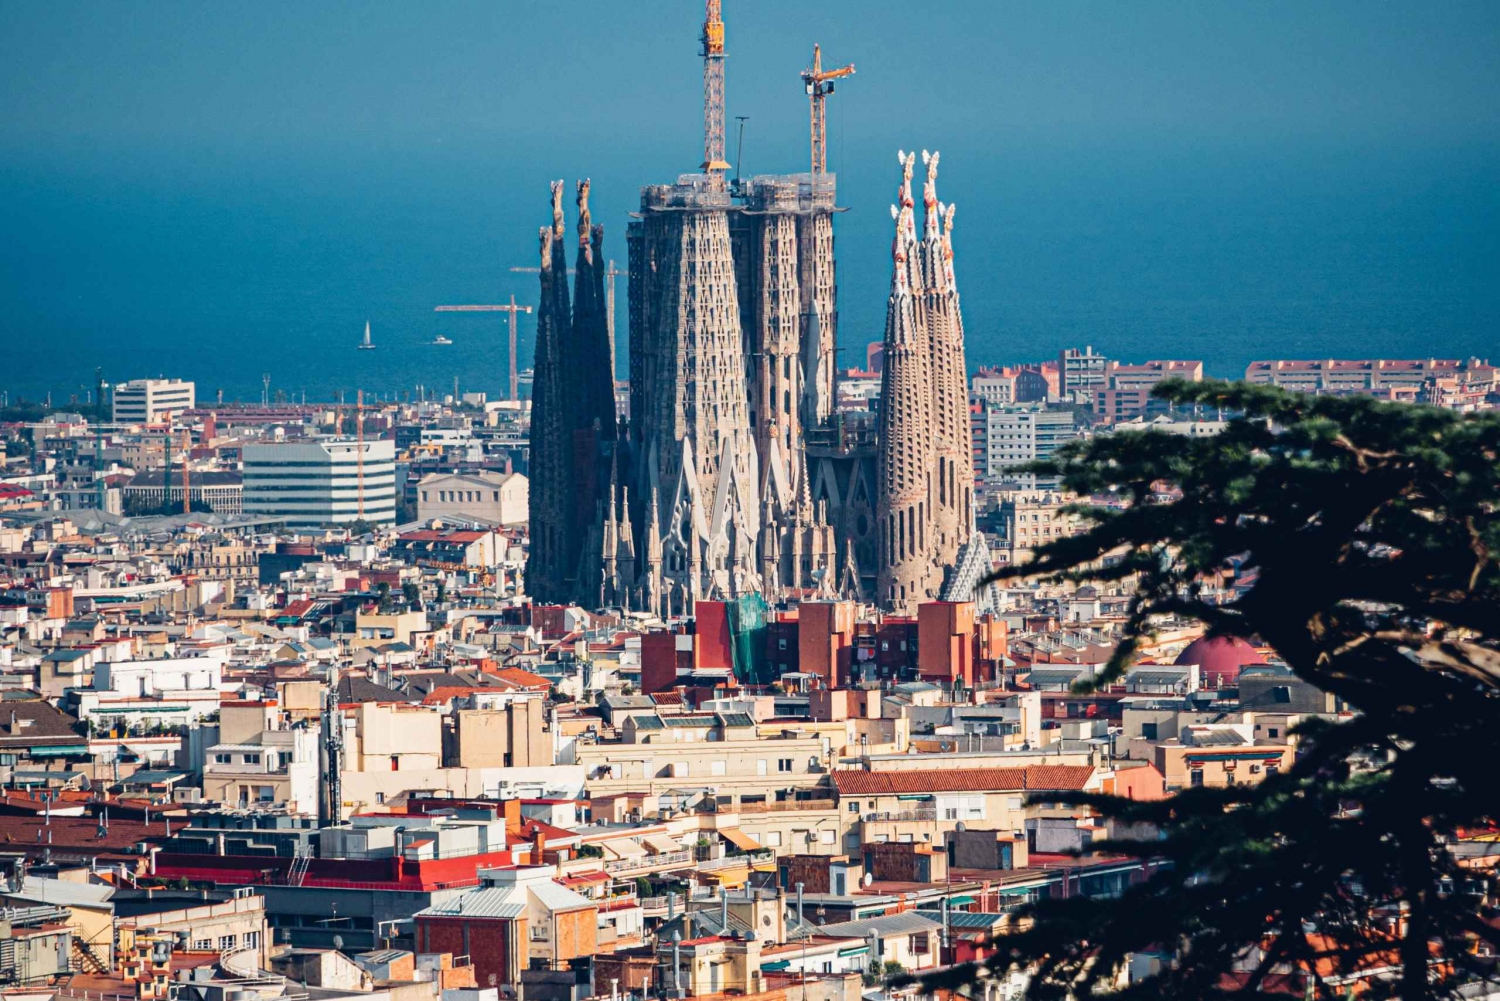 Bilety do Sagrada Familia: Poznaj arcydzieło Gaudiego